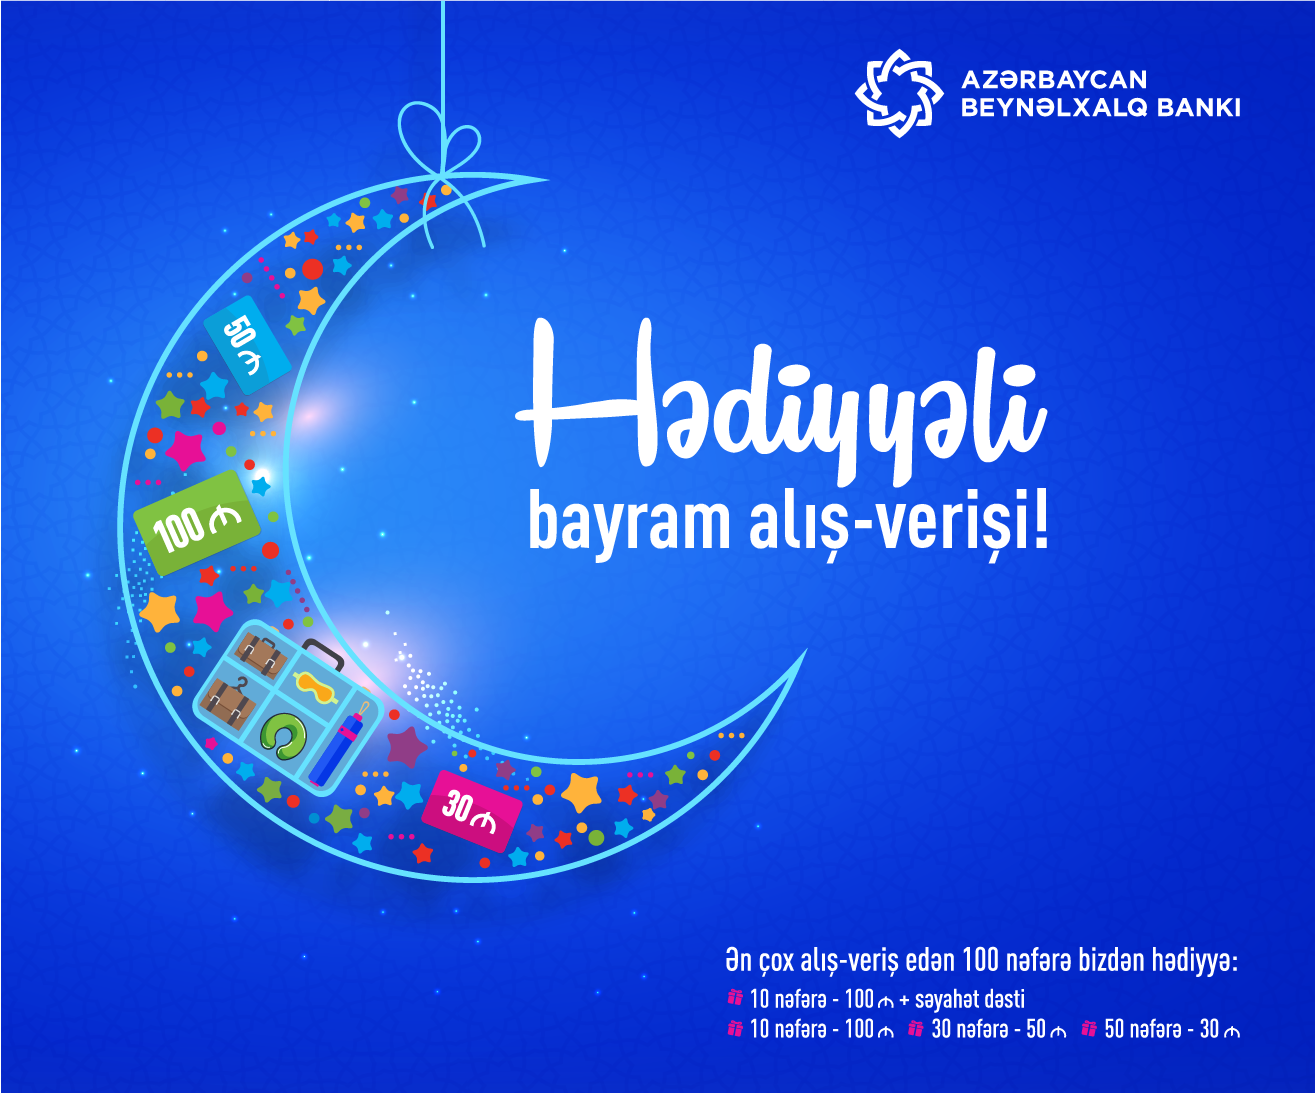 Beynəlxalq Bankdan Ramazan bayramı ərəfəsində hədiyyəli kampaniya